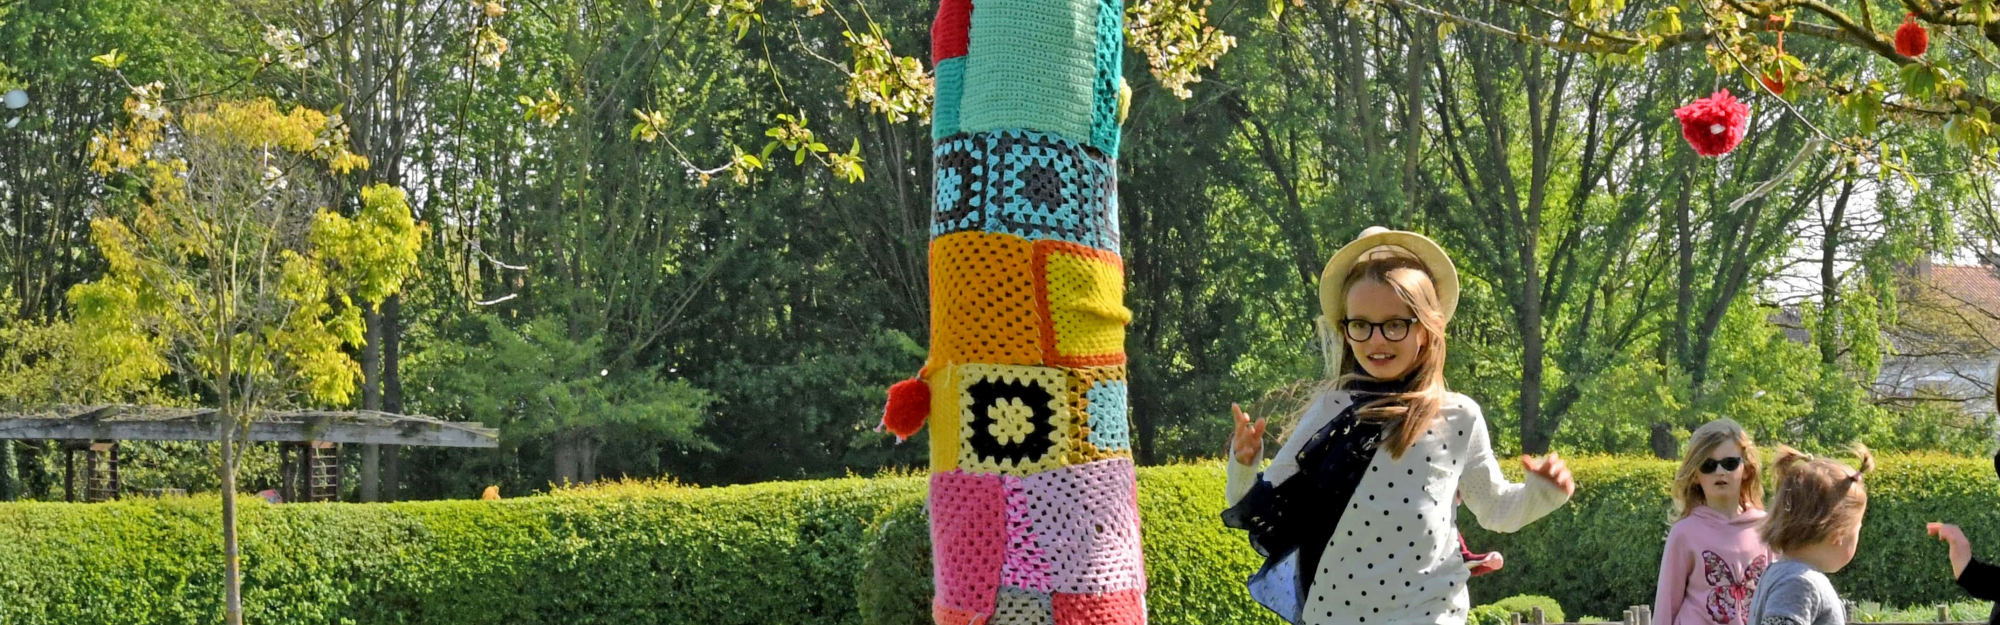 MOSAÏC, le jardin des cultures : La Métropole Européenne de Lille lance une concertation citoyenne sur la création d’un espace destiné à la petite enfance